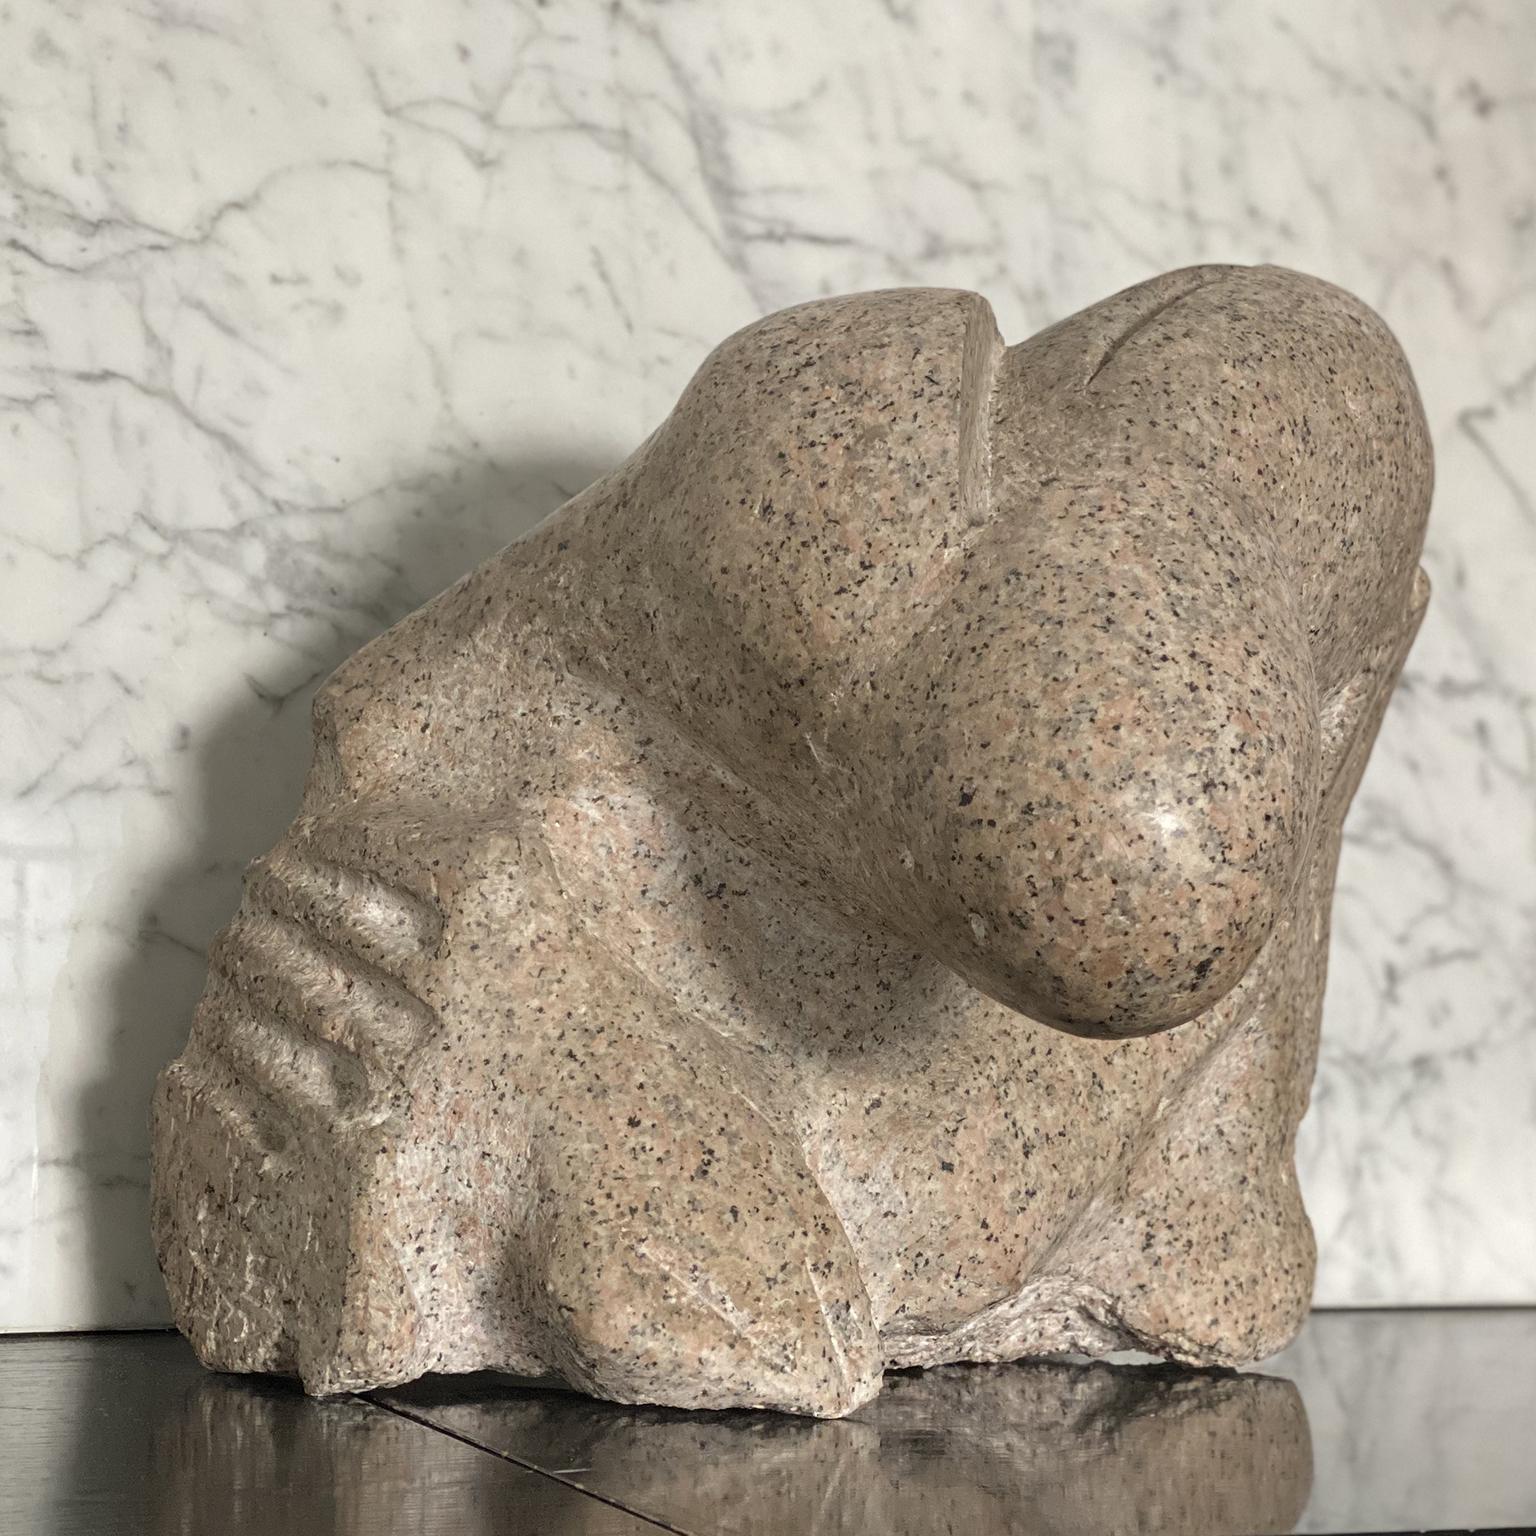 Il s'agit d'une sculpture très rare et raffinée de l'artiste italien Aldo Flecchia, créée dans les années 1970 à partir d'un bloc de granit rose massif. Il s'agit d'une composition abstraite très plastique de formes lisses et tranchantes. Elle est